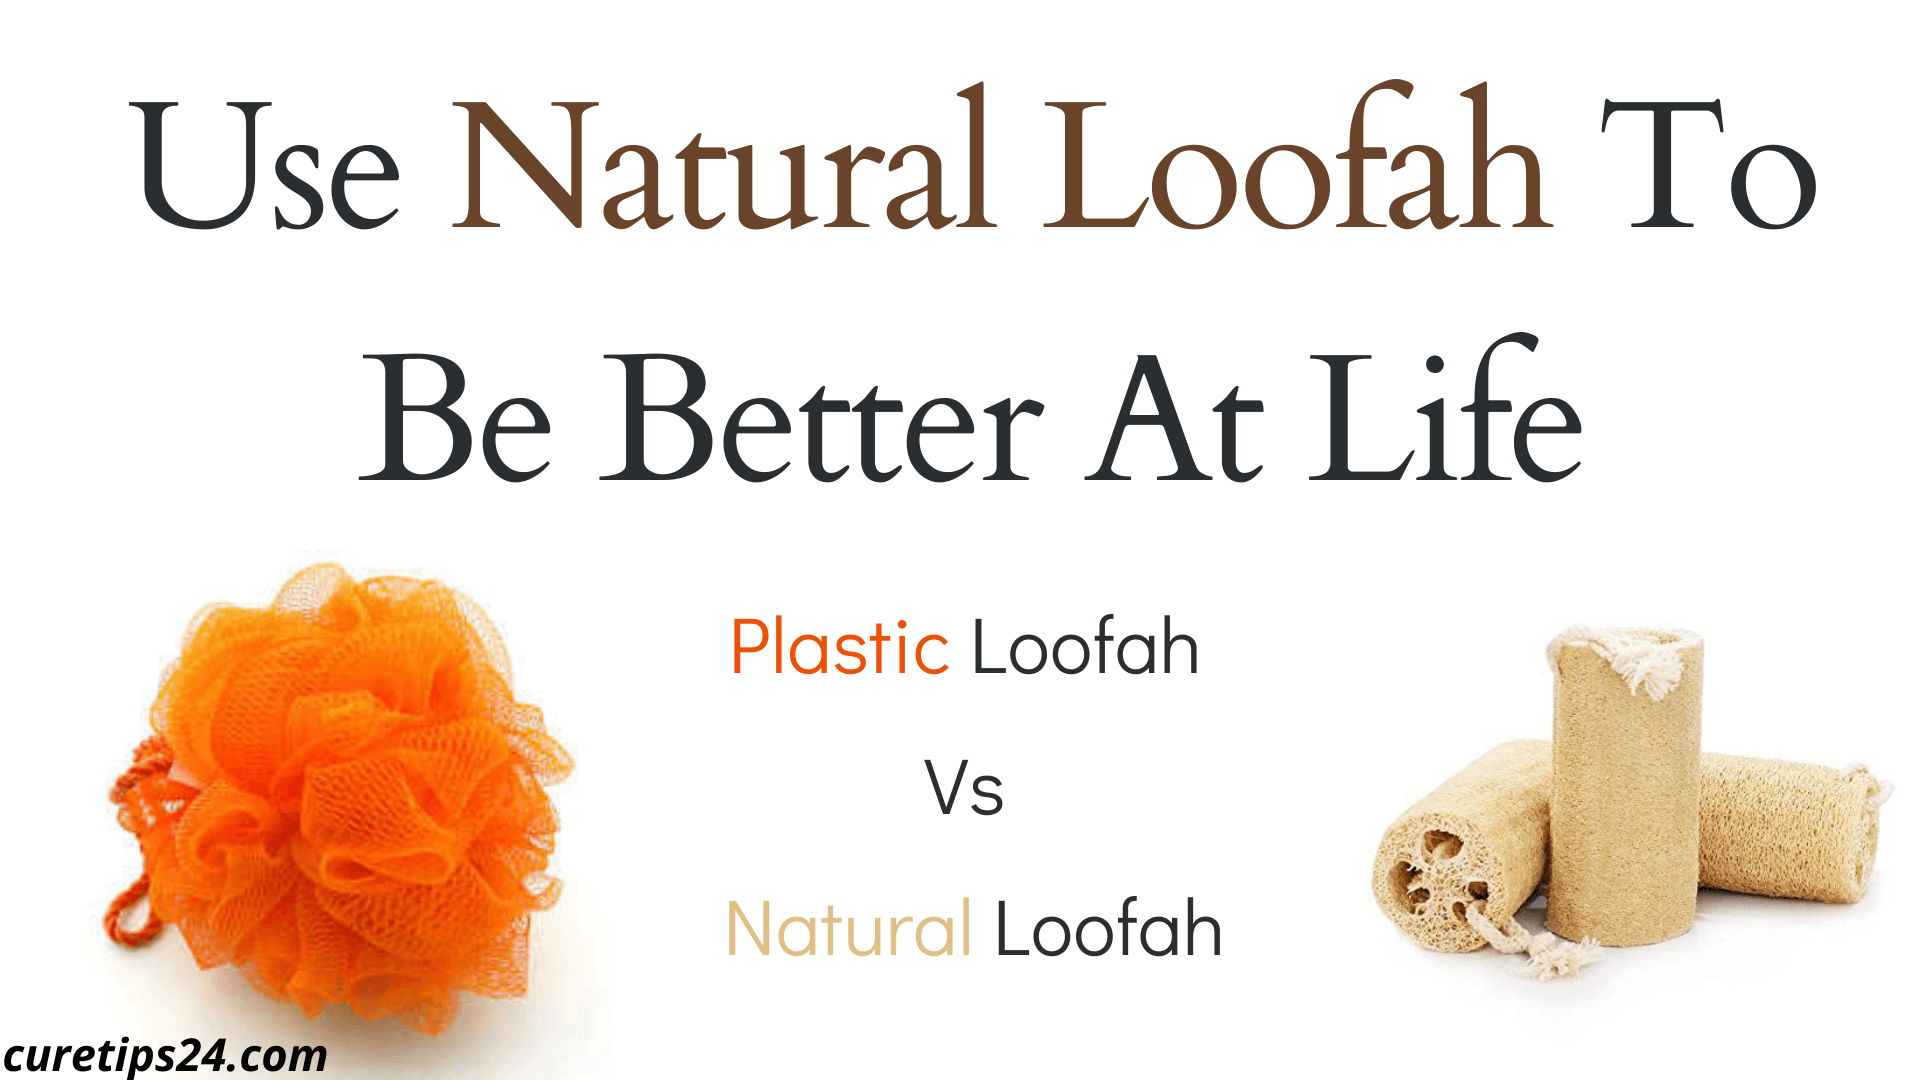 Plastic Loofah Vs Natural Loofah